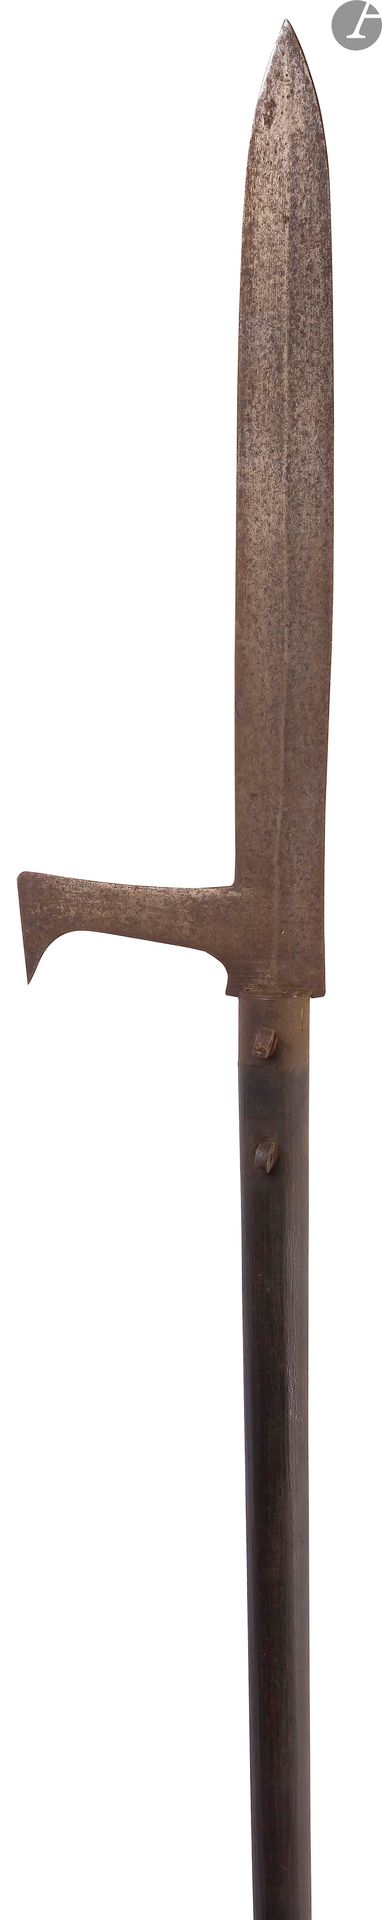 Null 
Arma giapponese per l'hast.

Manico in legno annerito. 



XIX secolo.



&hellip;